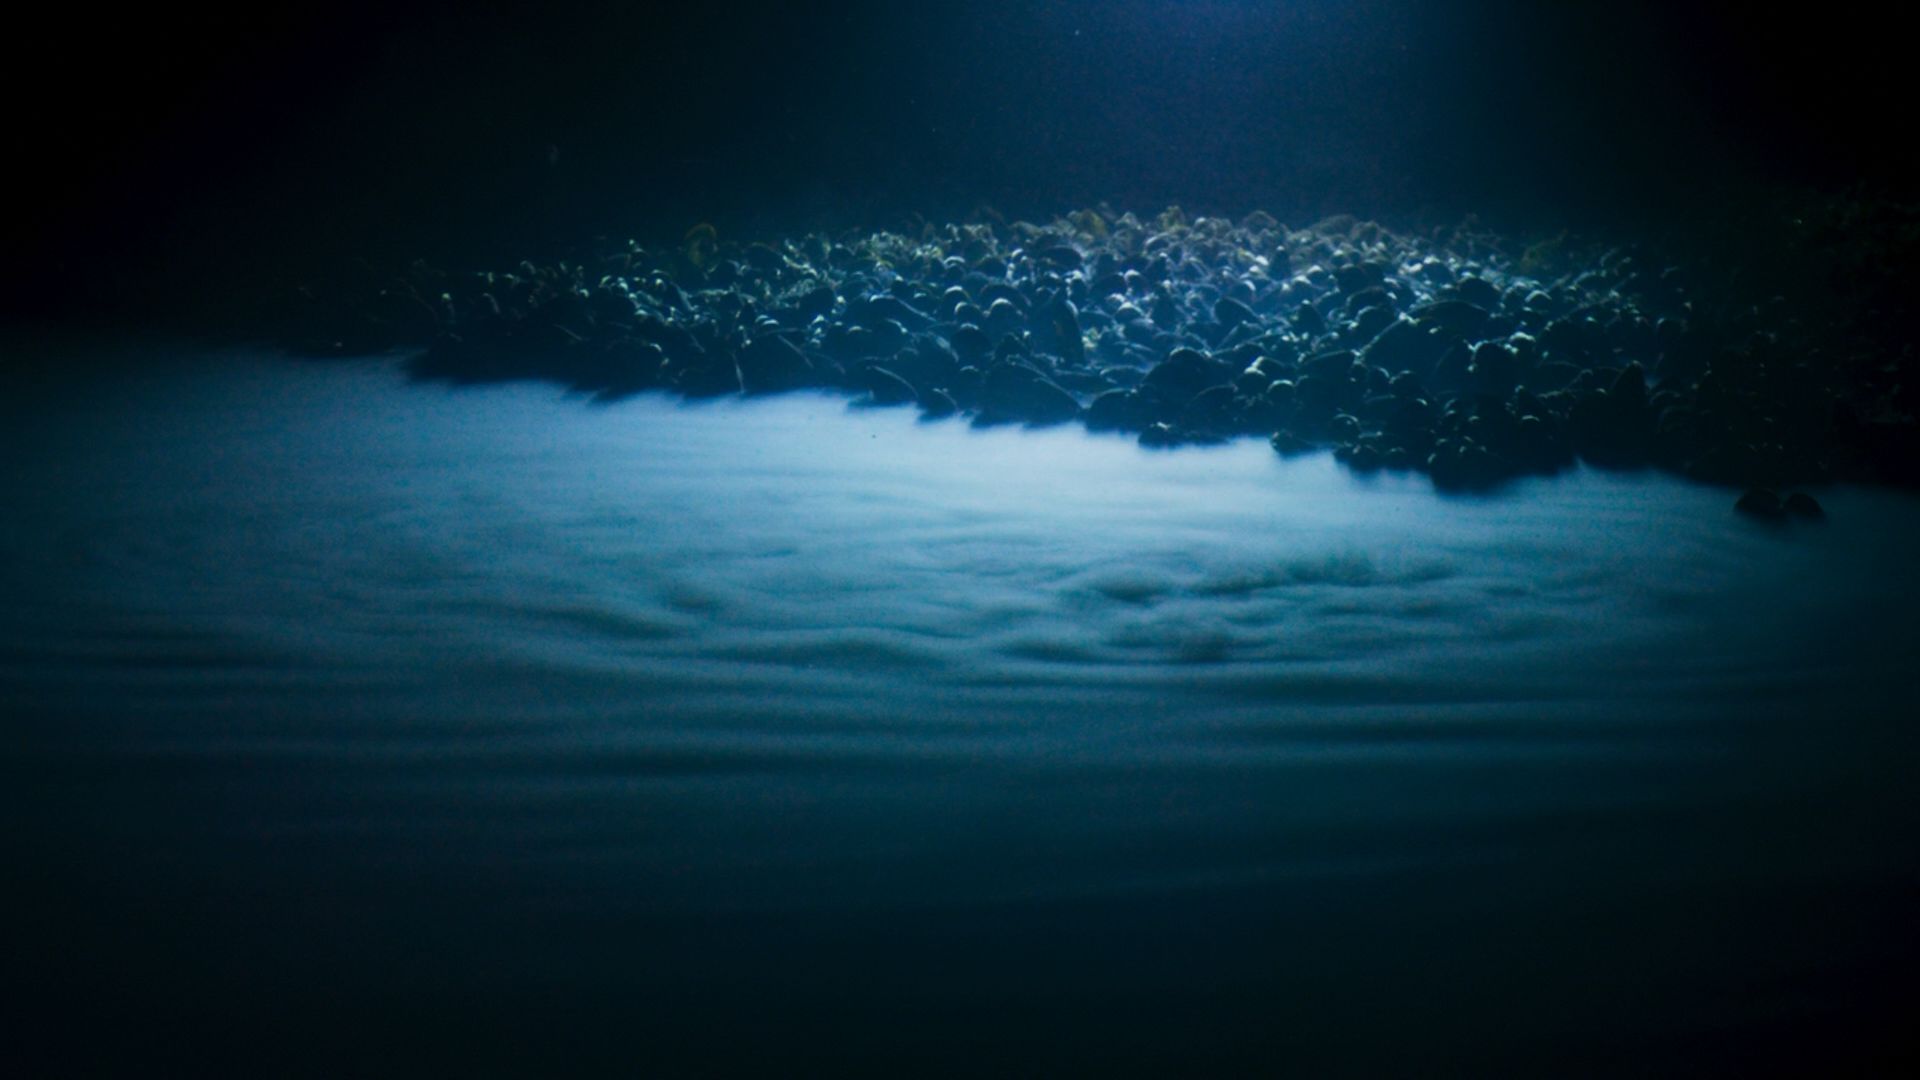 海底一万米到底有多么恐怖?胆大的潜水员看到都害怕